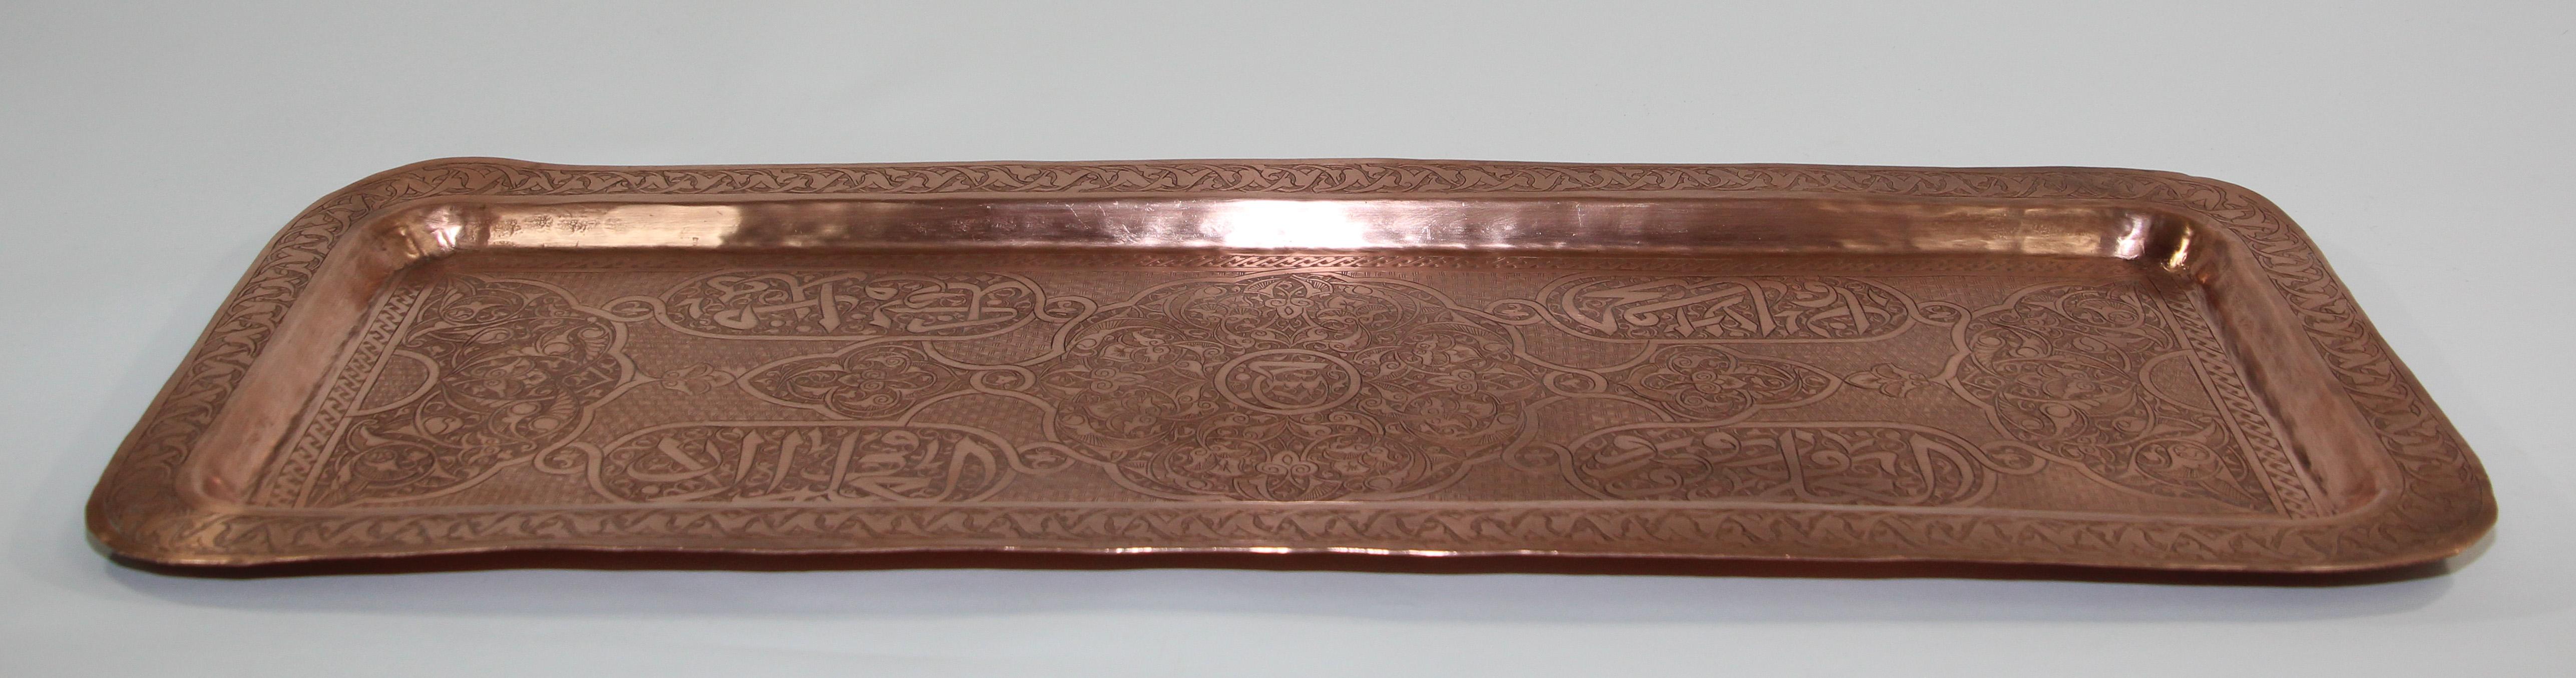 persian copper tray